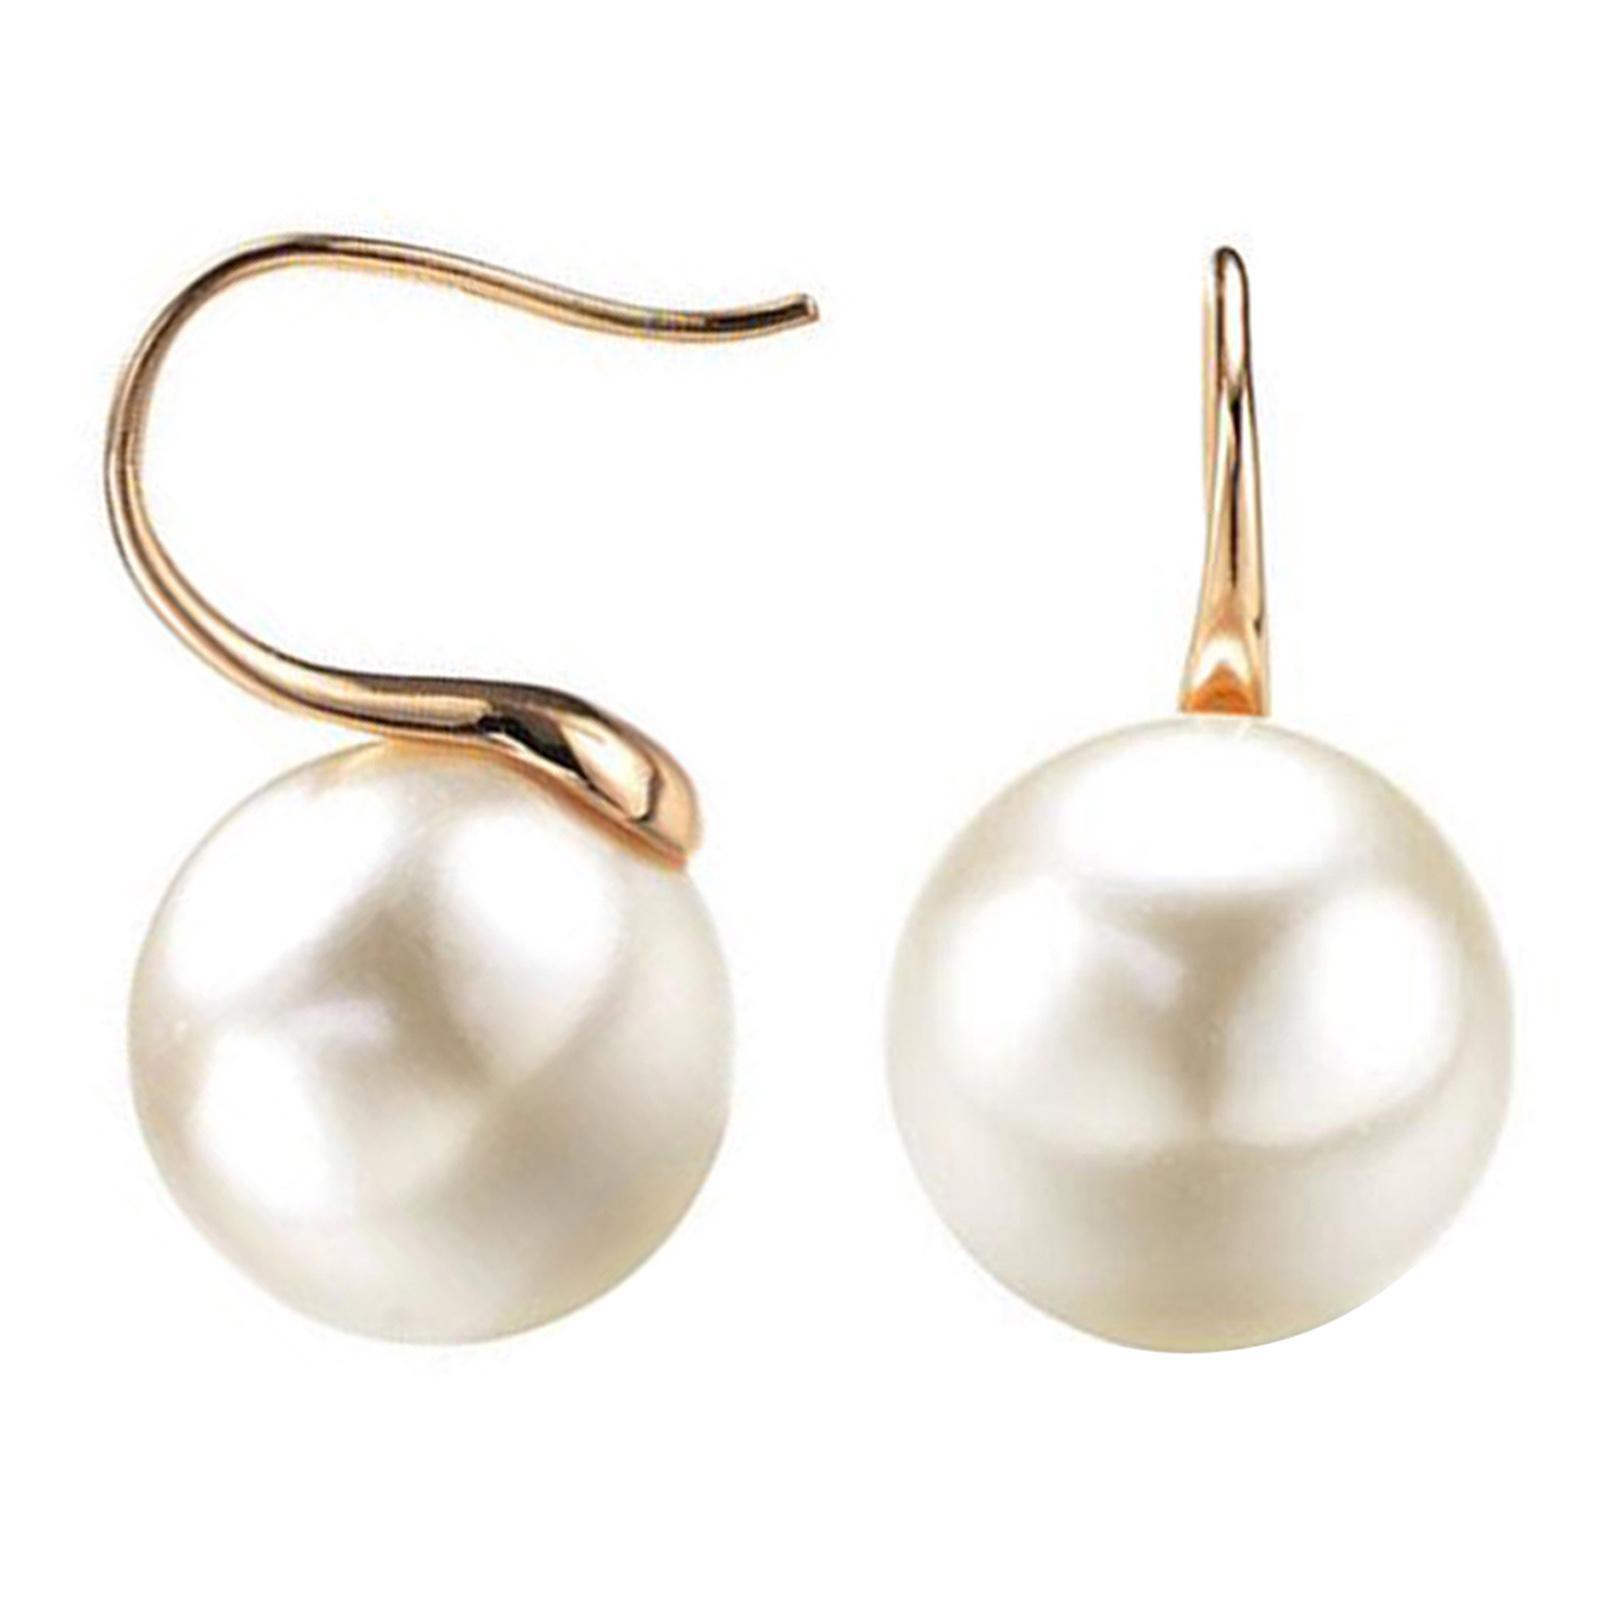 Pearl Earrings Faux Classic Elegant Ear Hook Jewelry Drop Earrings Women